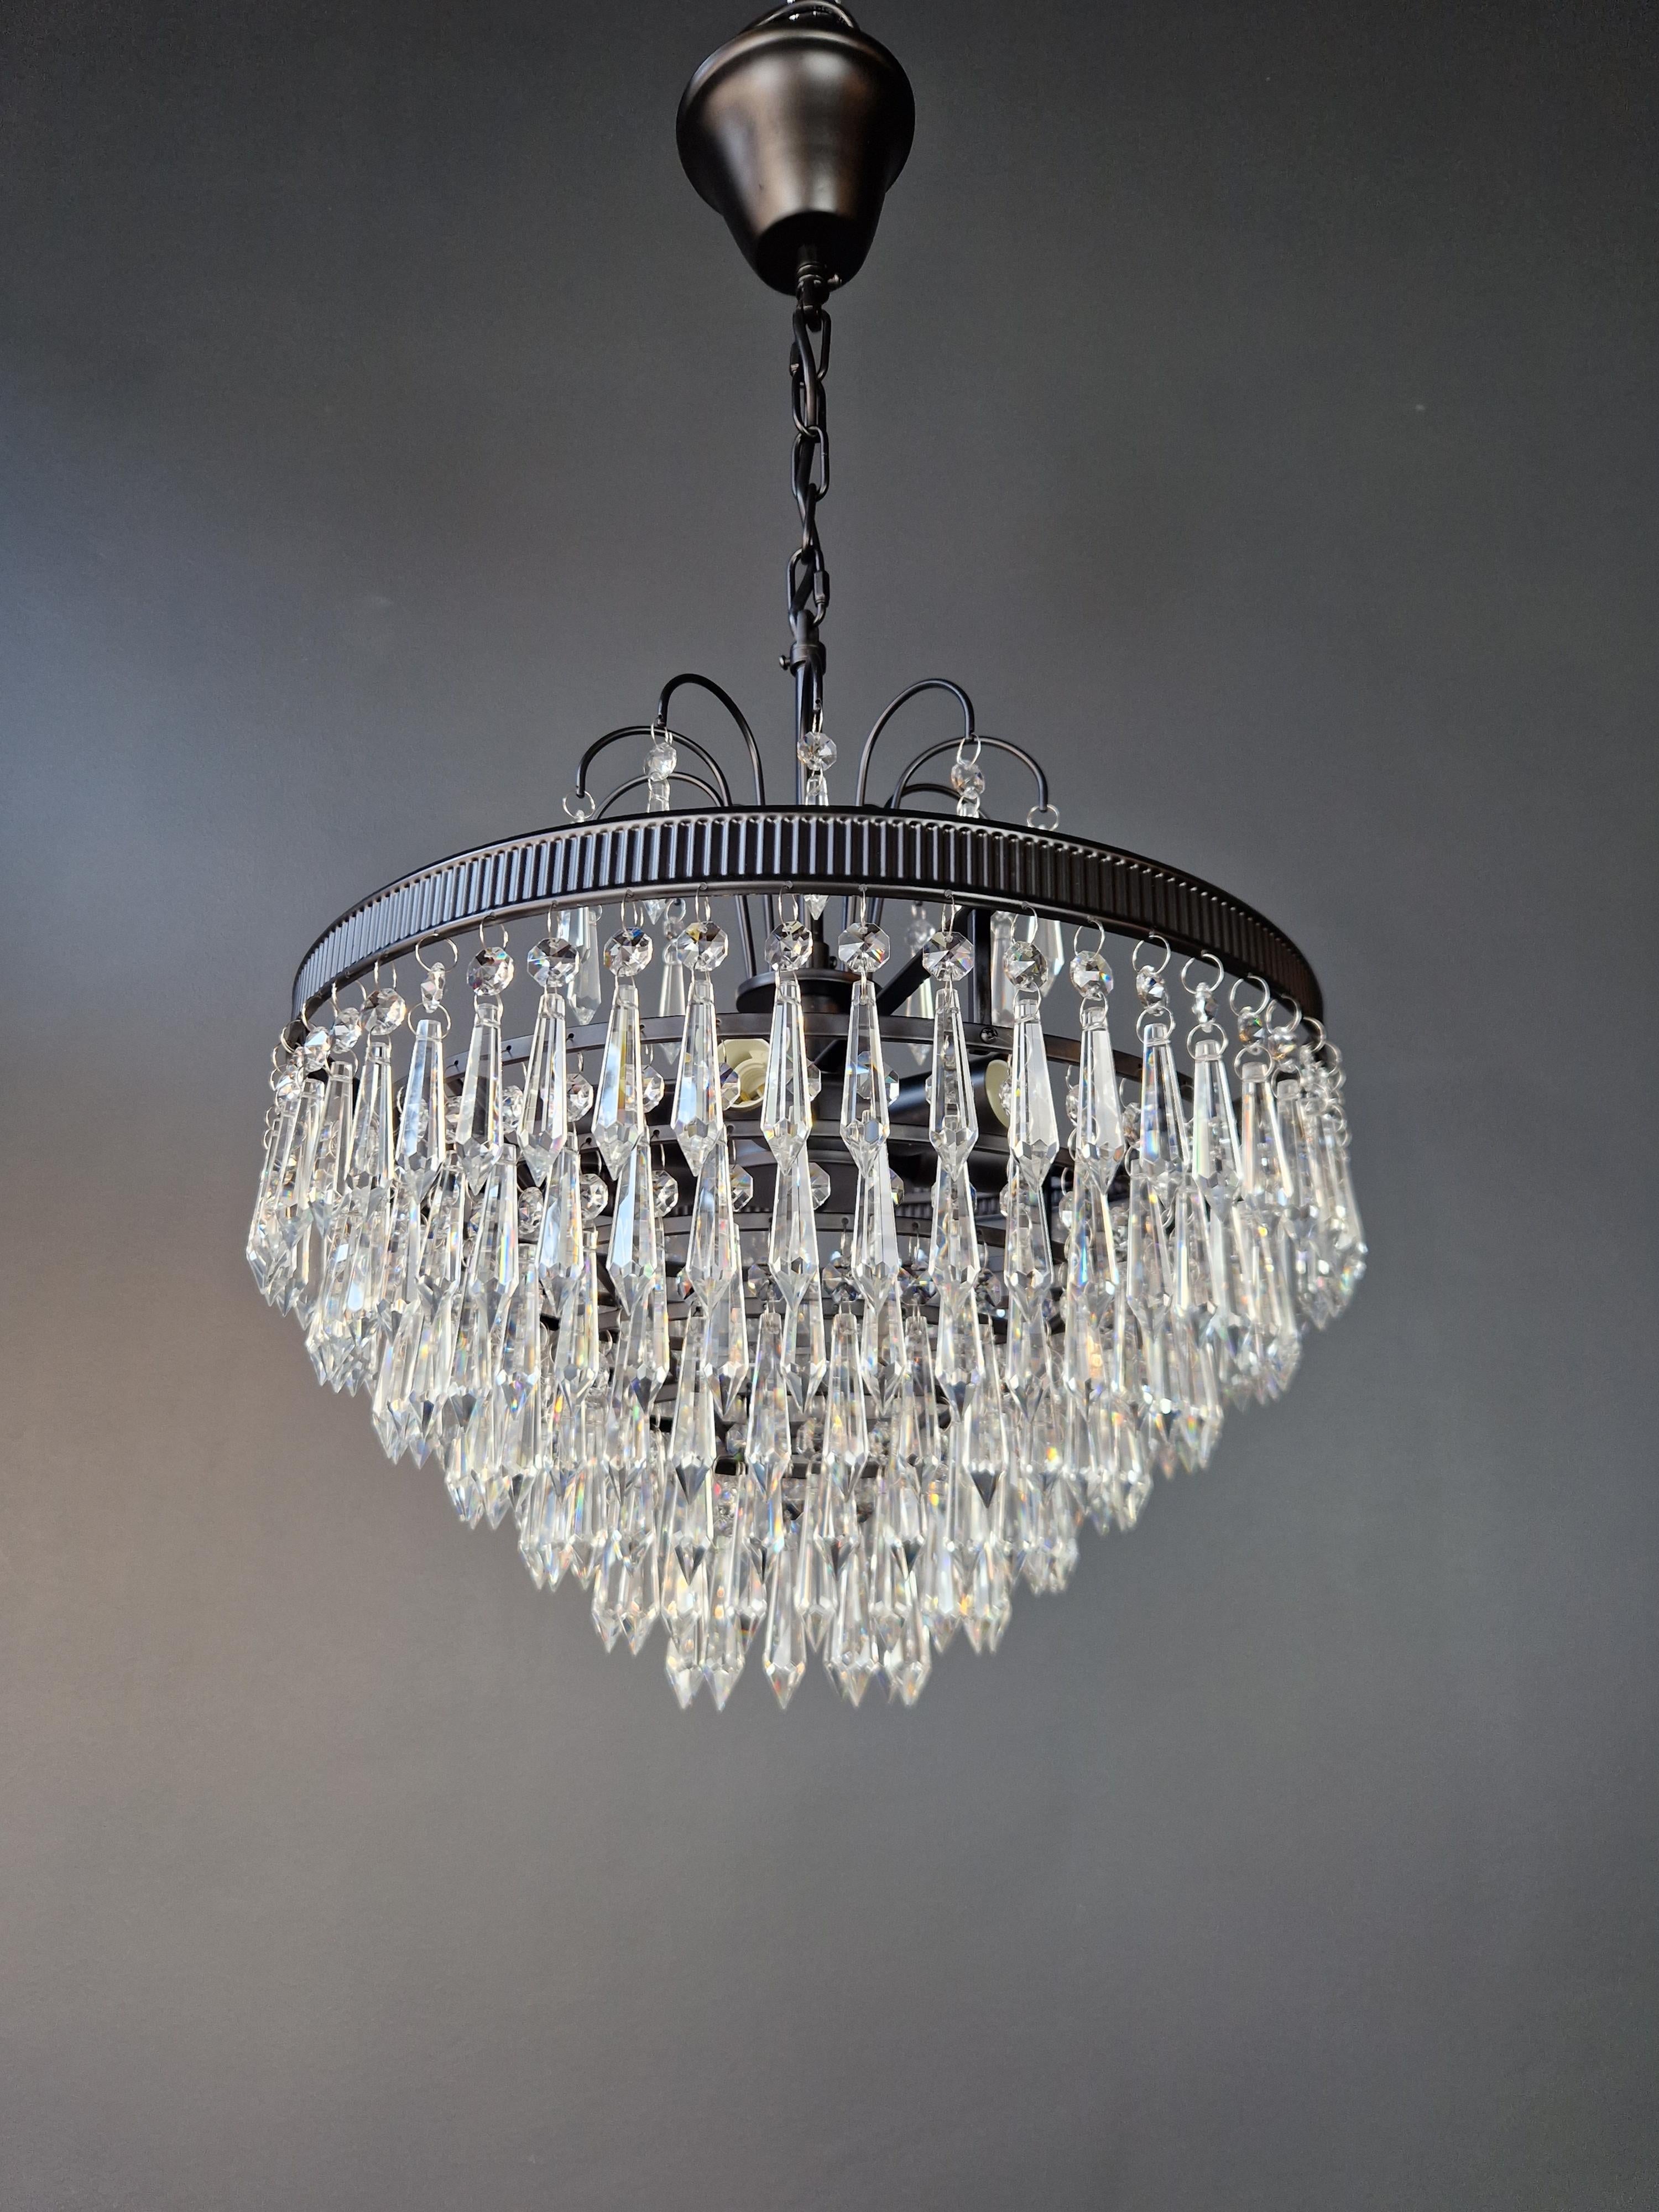 Regency Modern Black Crystal Chandelier Lamp Lustre For Sale 1